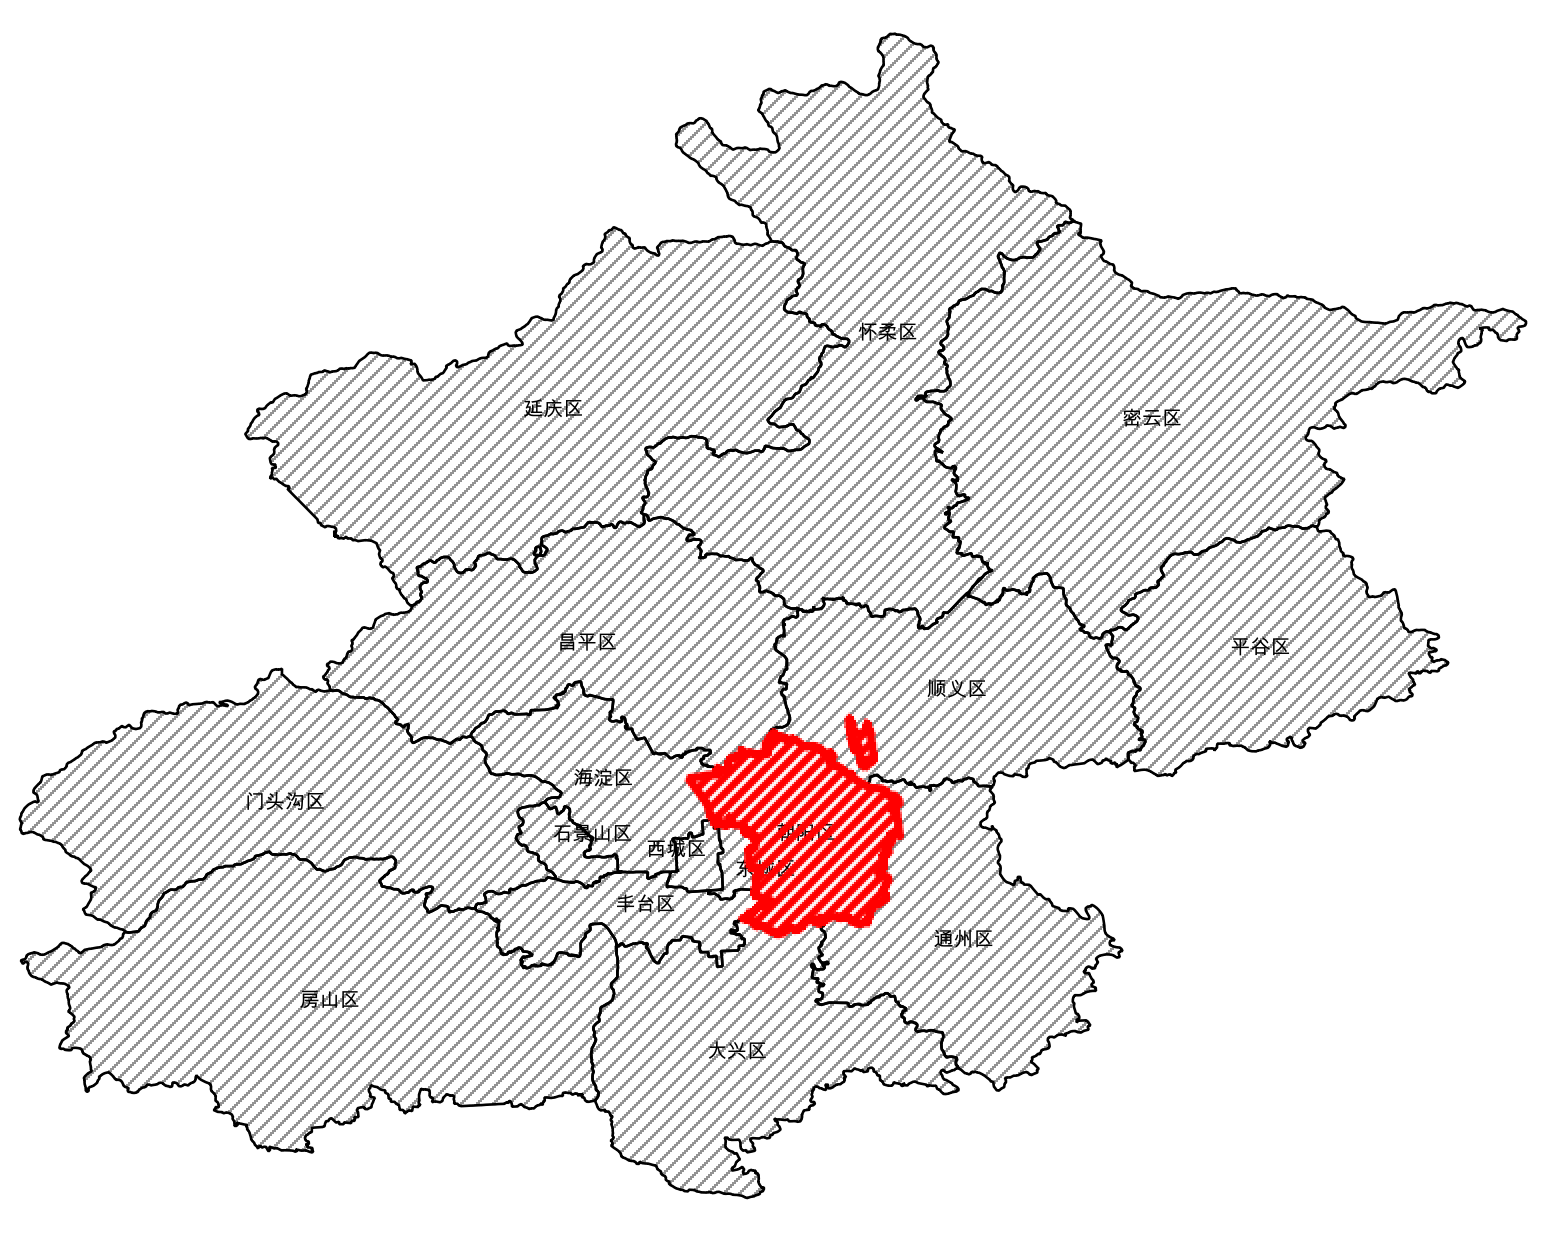 北京的详细地理位置数据我用Python获取了-鸿蒙开发者社区